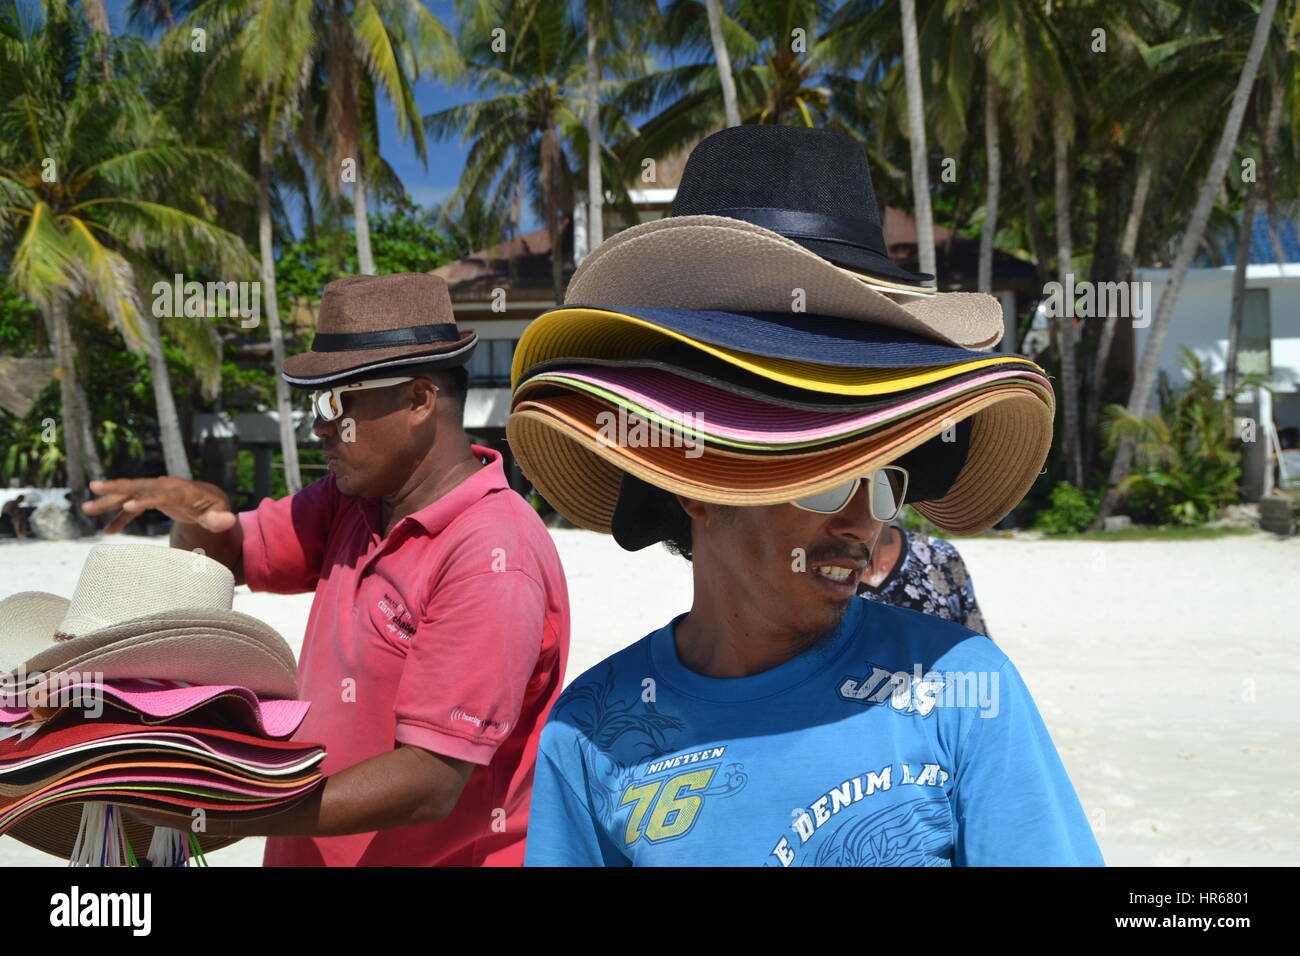 L'homme est la vente de chapeaux sur une plage sur l'île de Boracay.  Beaucoup de chapeaux sur sa tête. protection contre le soleil chaud Photo  Stock - Alamy